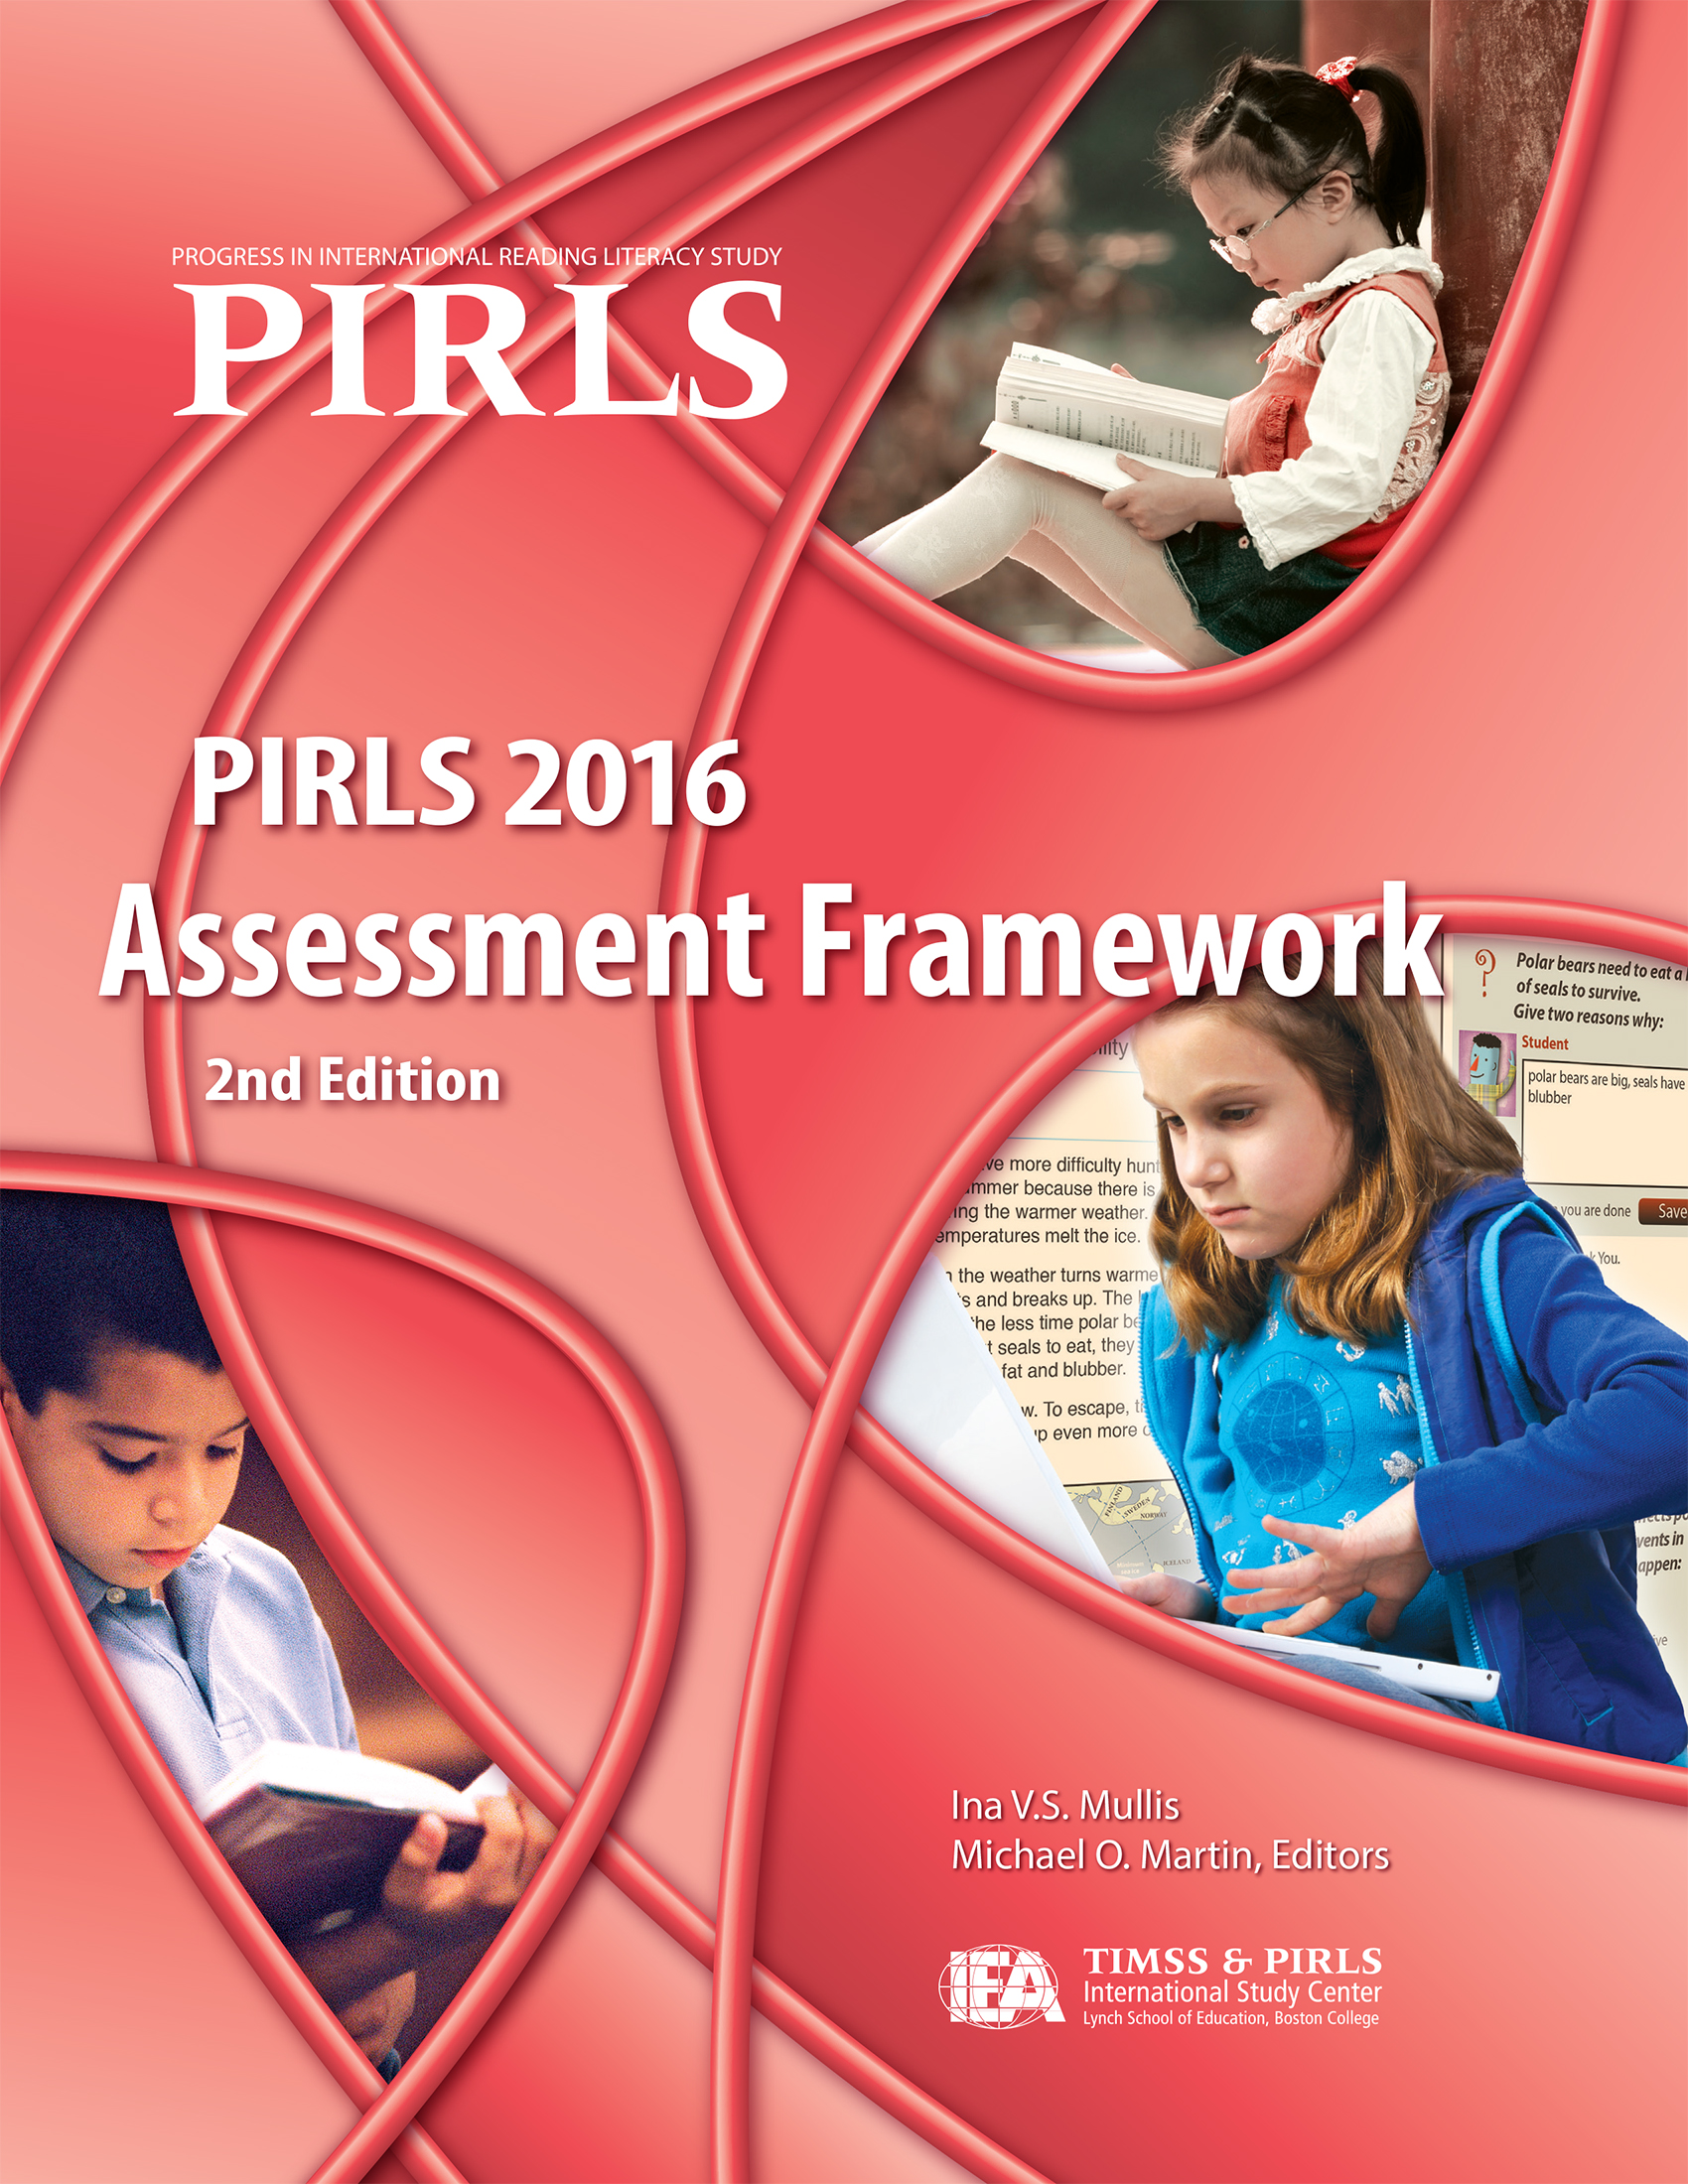 PIRLS 2016 Assessment Framework